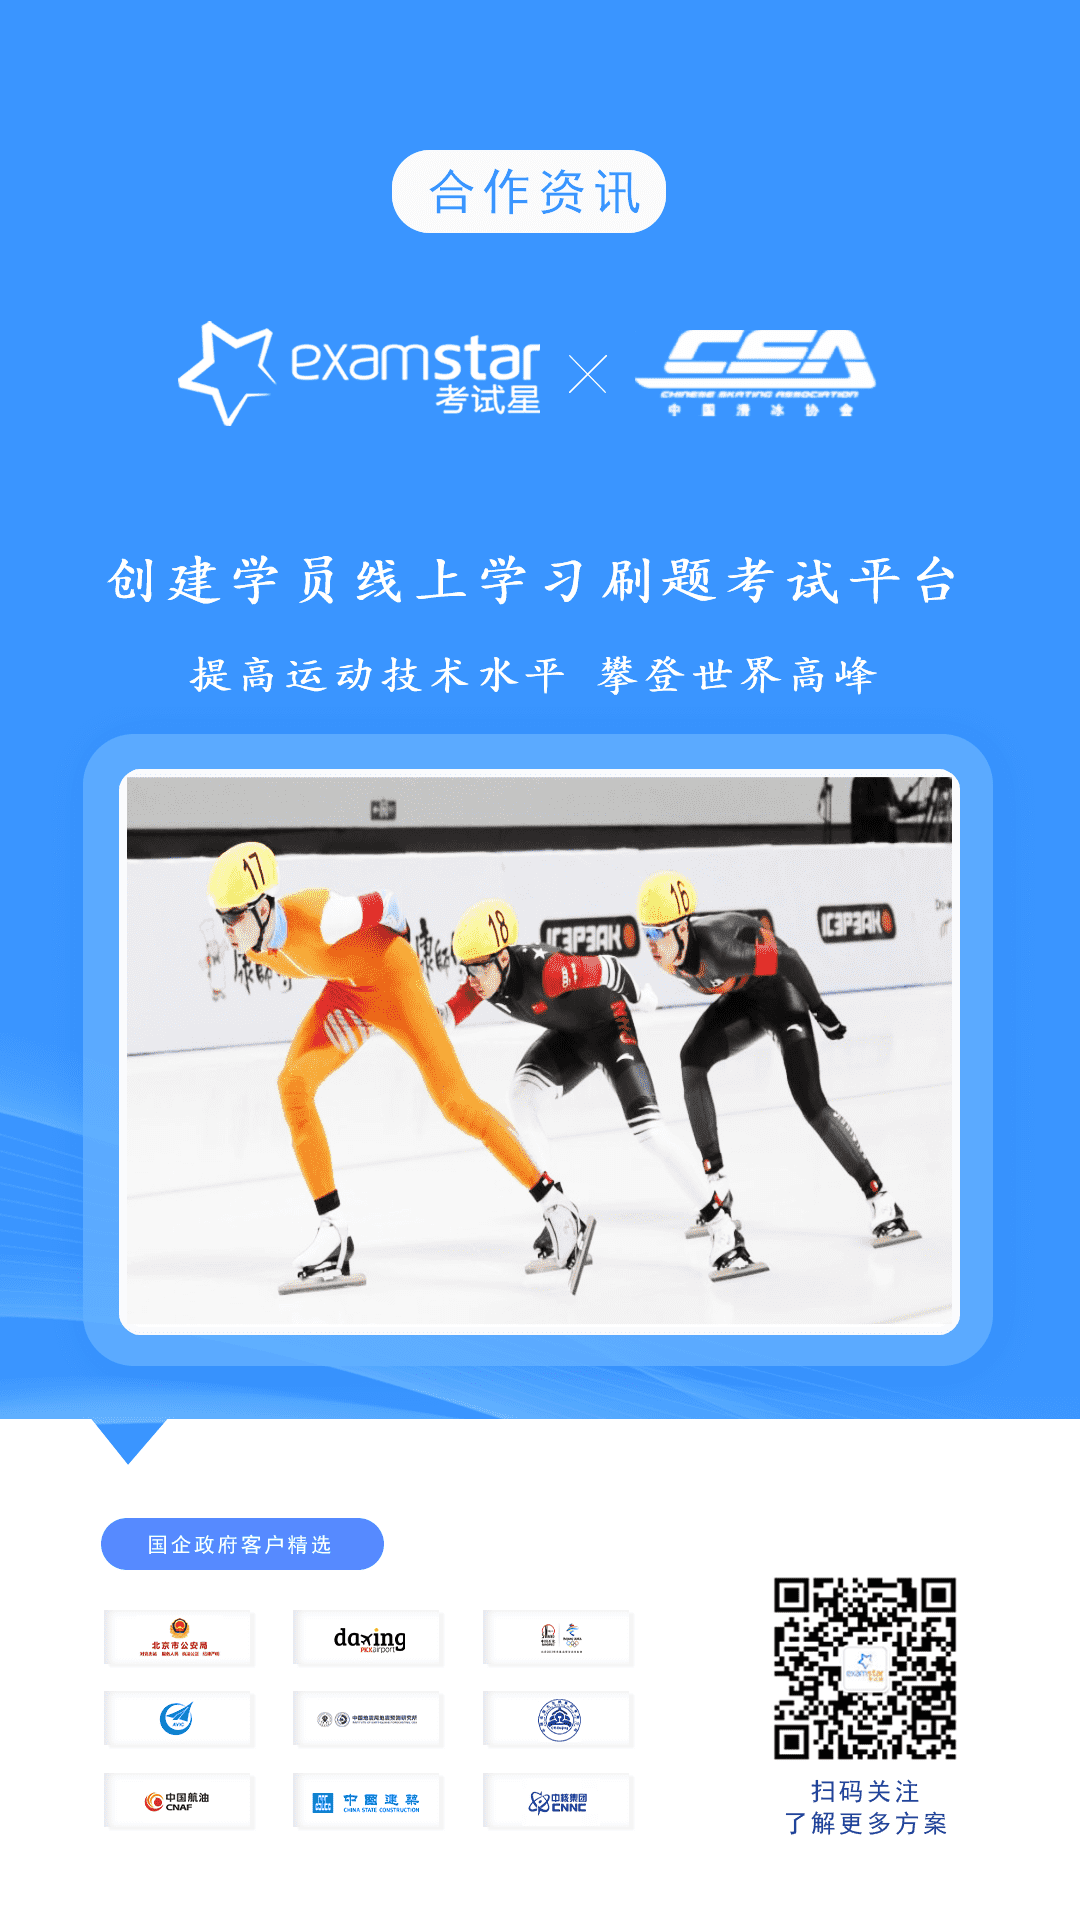 中国滑冰协会-考试星线上学习刷题考试平台